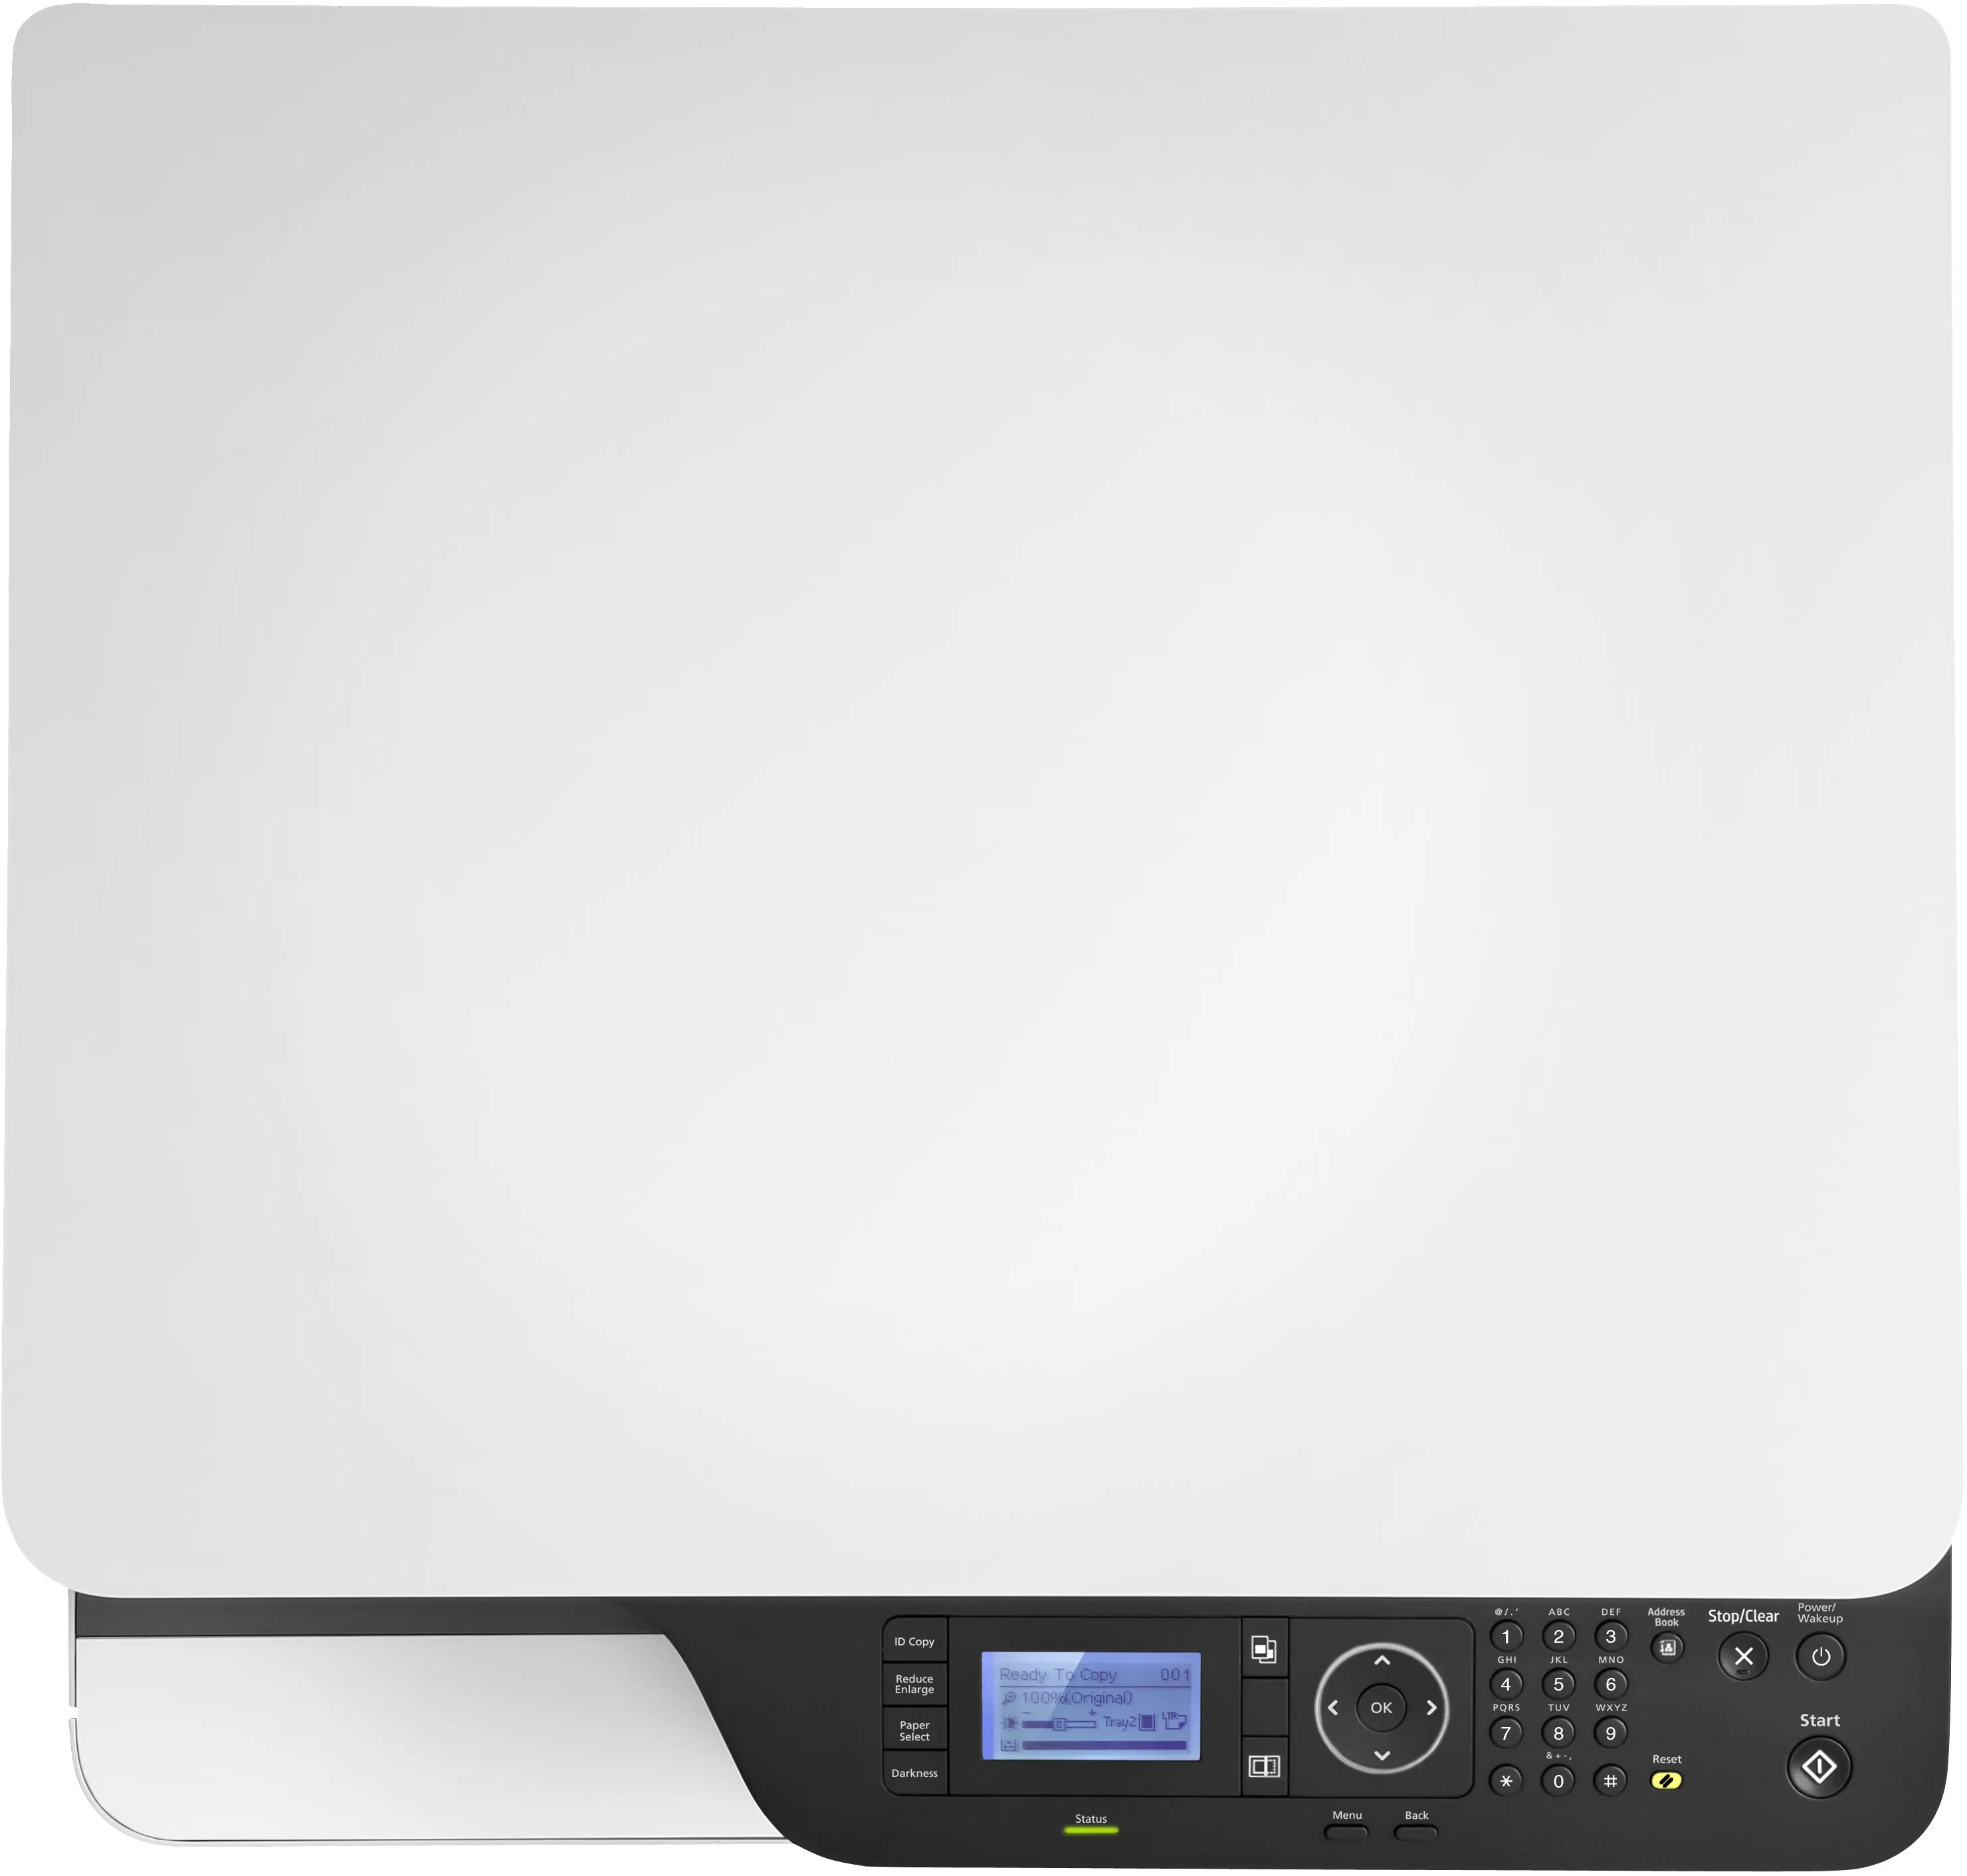 Vente Imprimante multifonction HP LaserJet M42625dn, Noir et blanc HP au meilleur prix - visuel 10